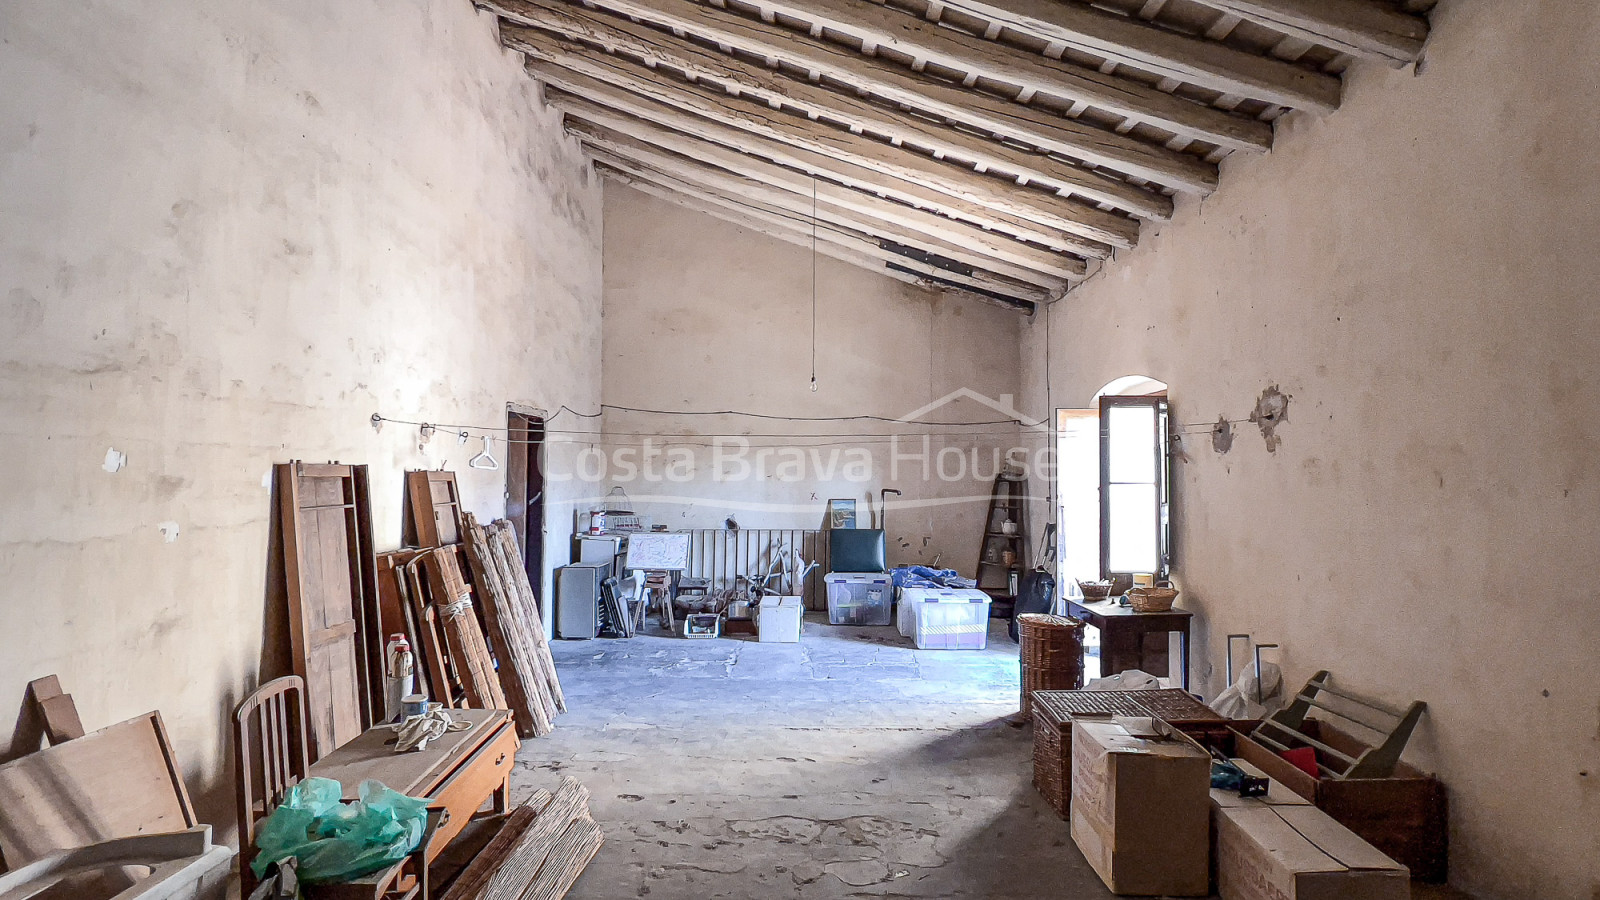 Casa histórica reformada en venta en Torroella de Montgrí